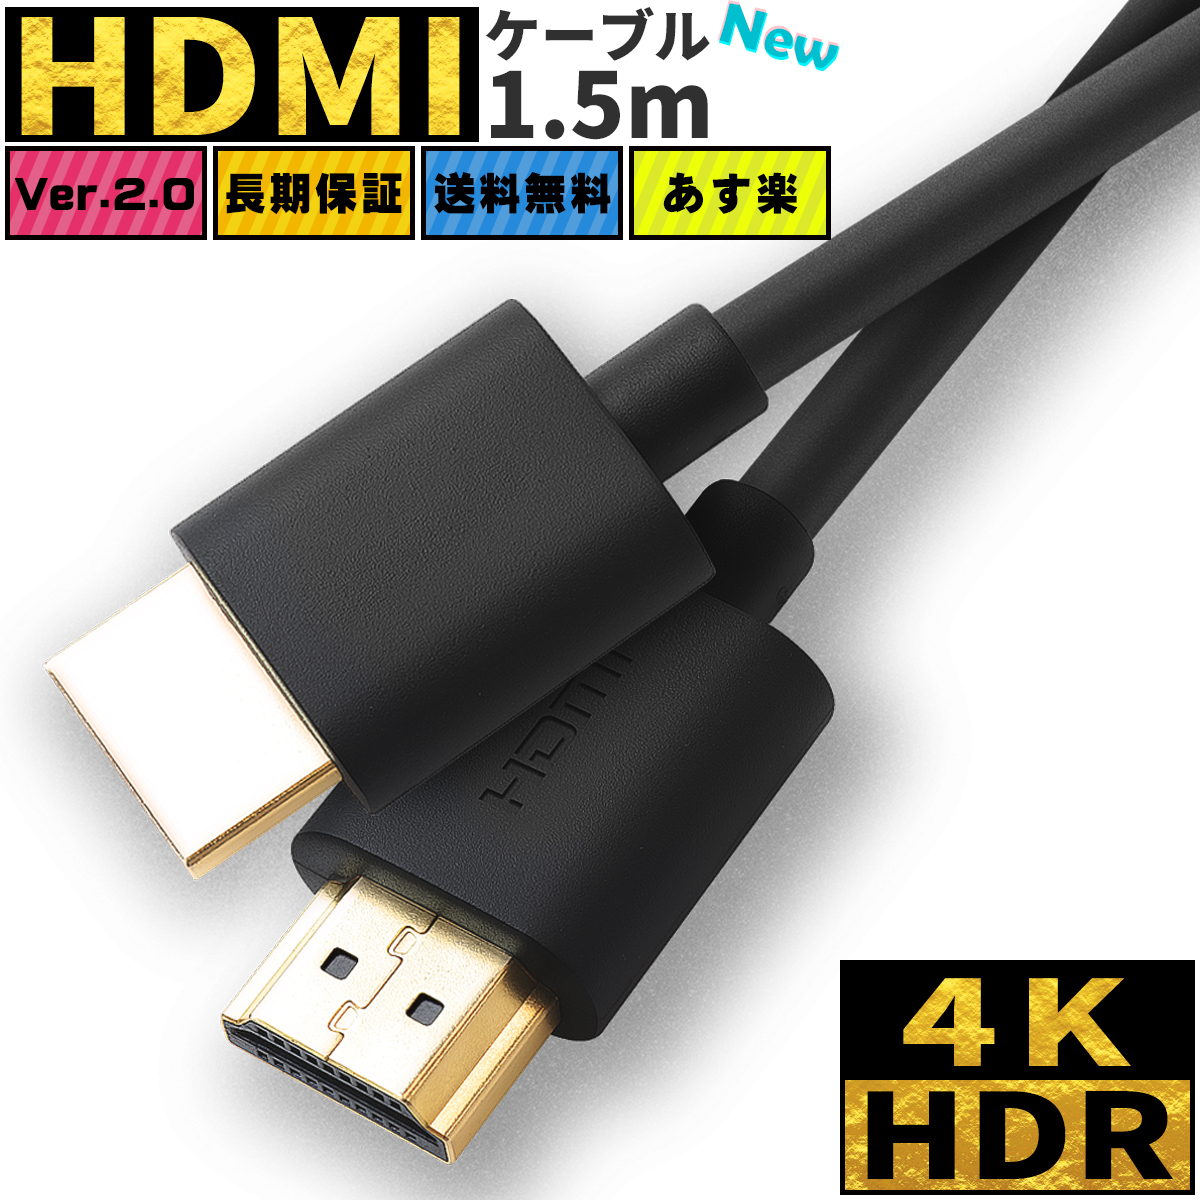 送料無料 HDMI ハイスピード HDMIケーブル DVDプレーヤー HDDレコーダー ケーブル 1.5m Ver.2.0 4K 8K 無料サンプルOK 数量限定 特売 60Hz 3D 細線 switch ニンテンドー イーサネット テレビ tv 高品質 業務用 スイッチ ポイント消化 スリム DM便